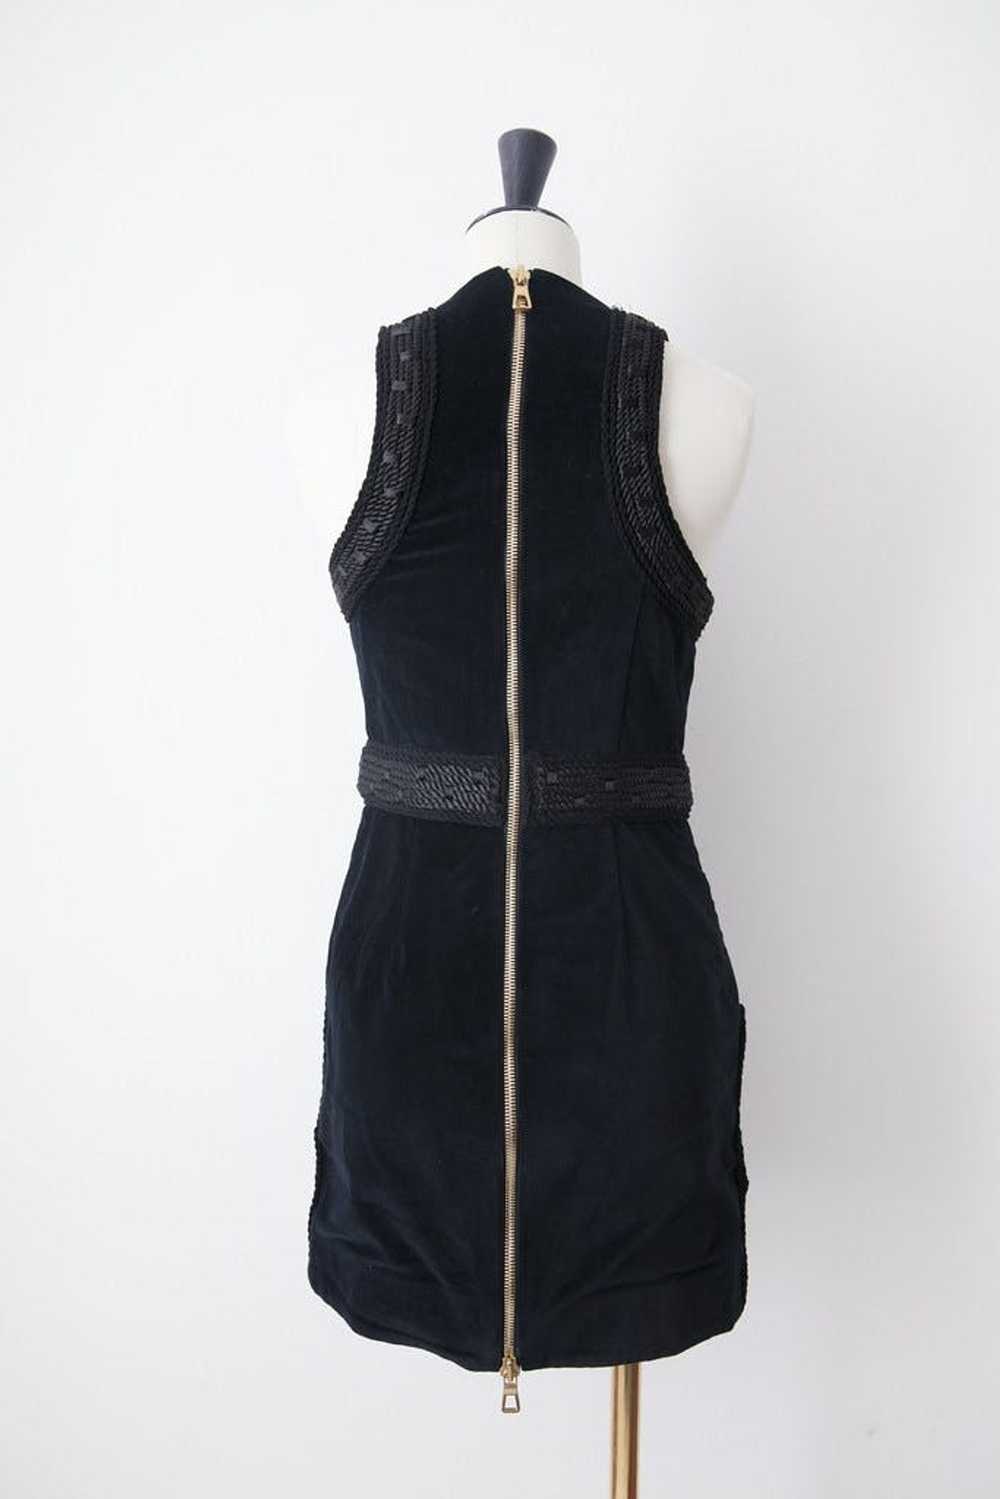 Balmain X H&M Black velvet dress - image 5